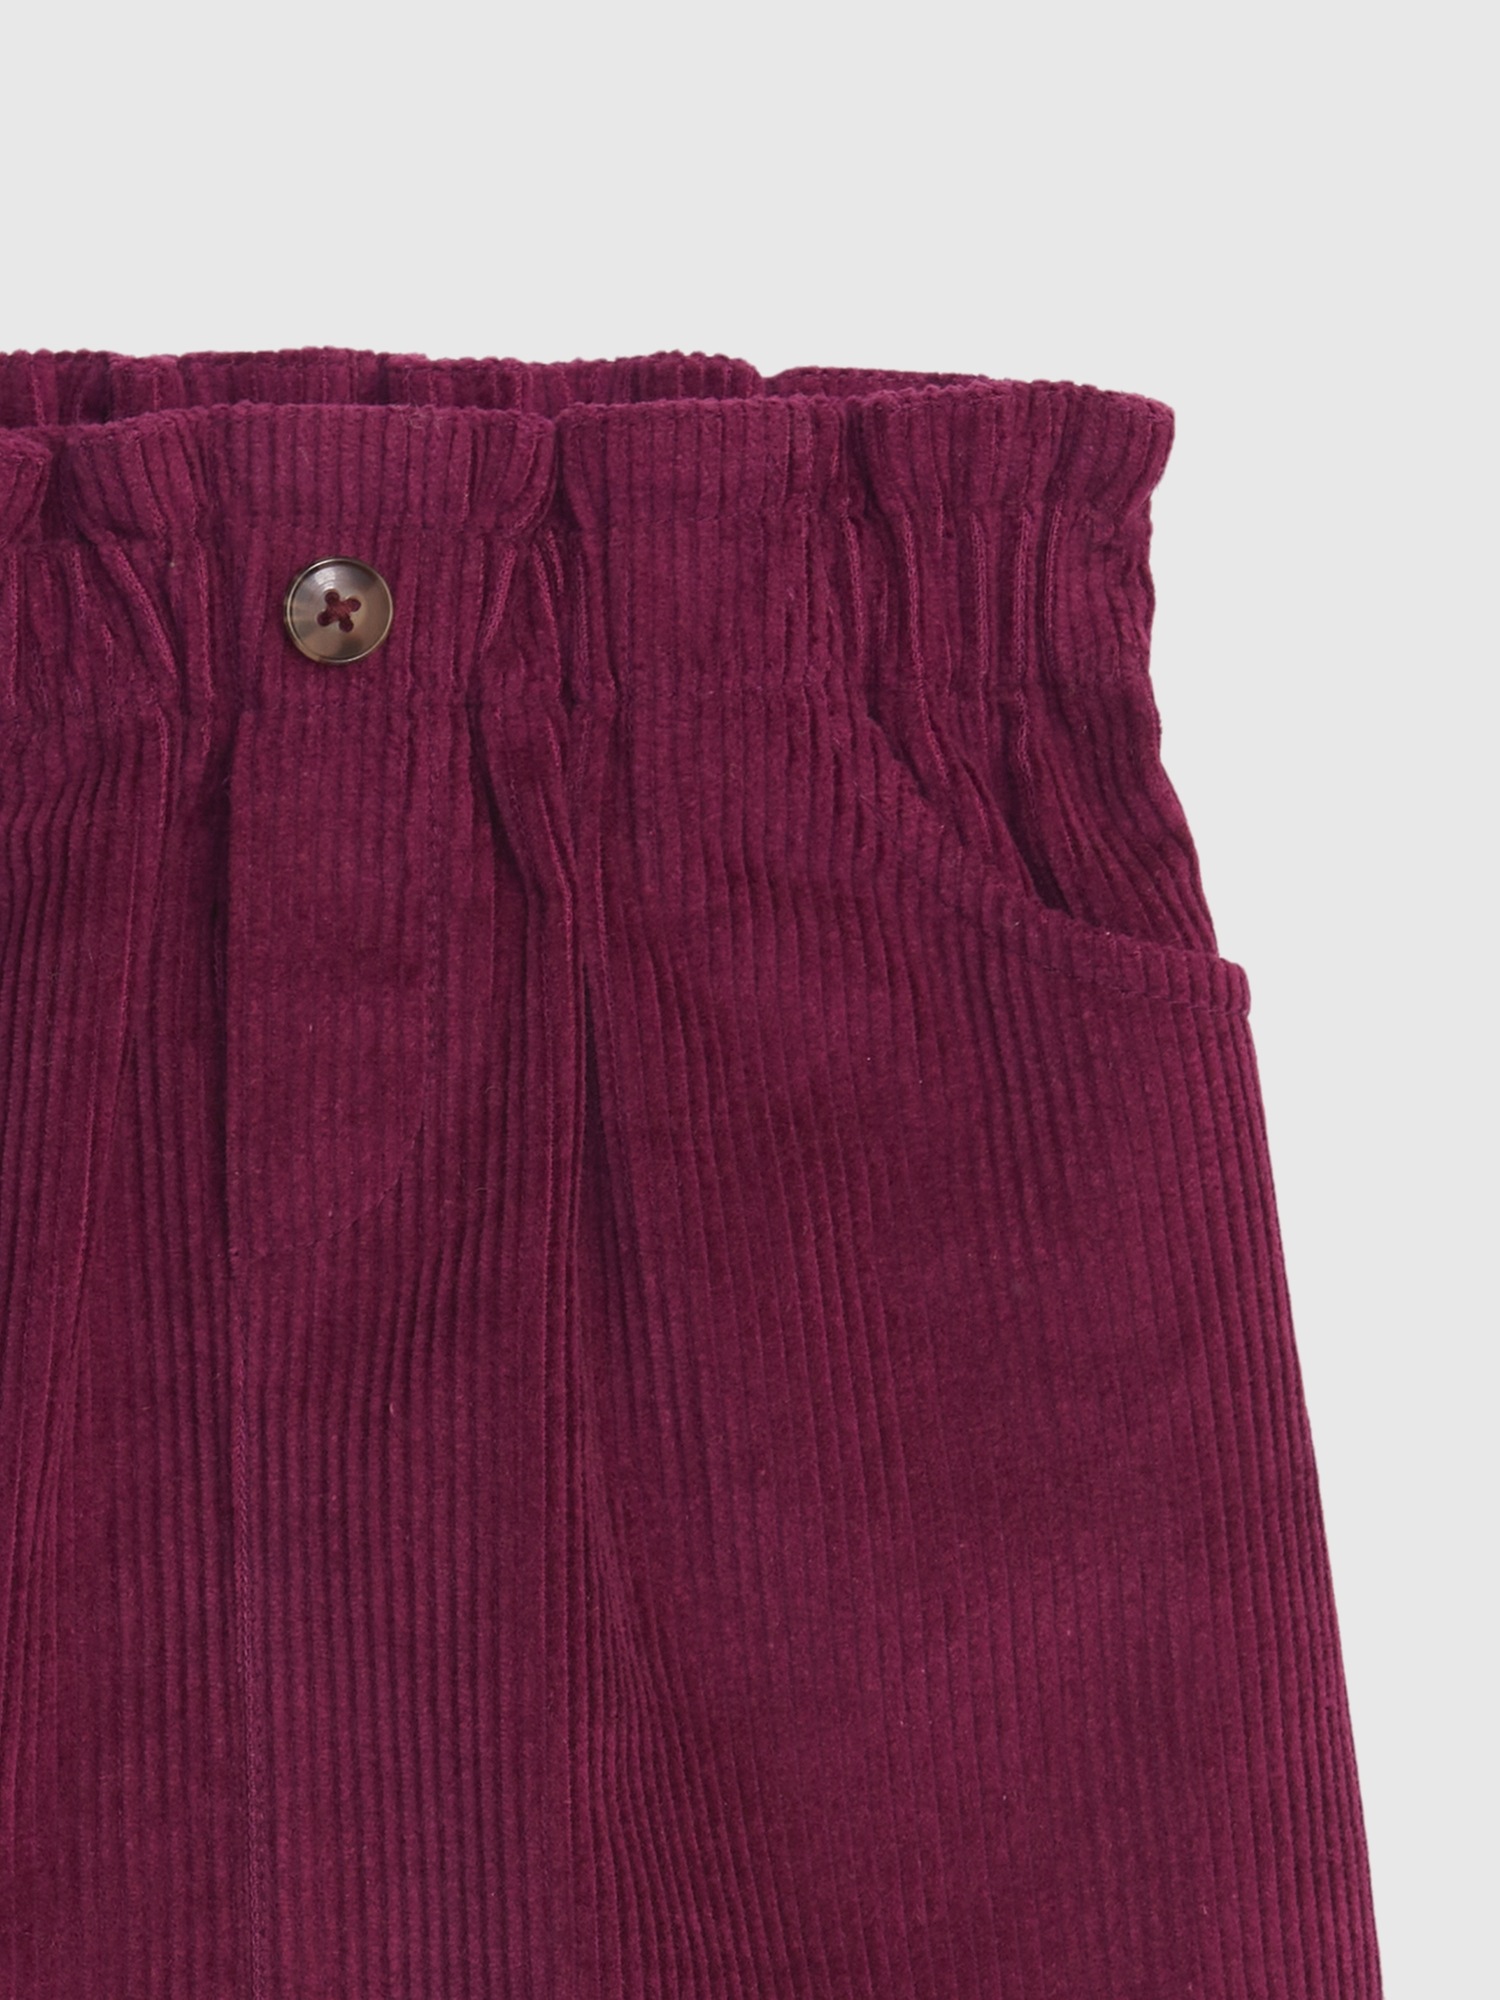 Toddler Ruffle Corduroy Skirt | Gap